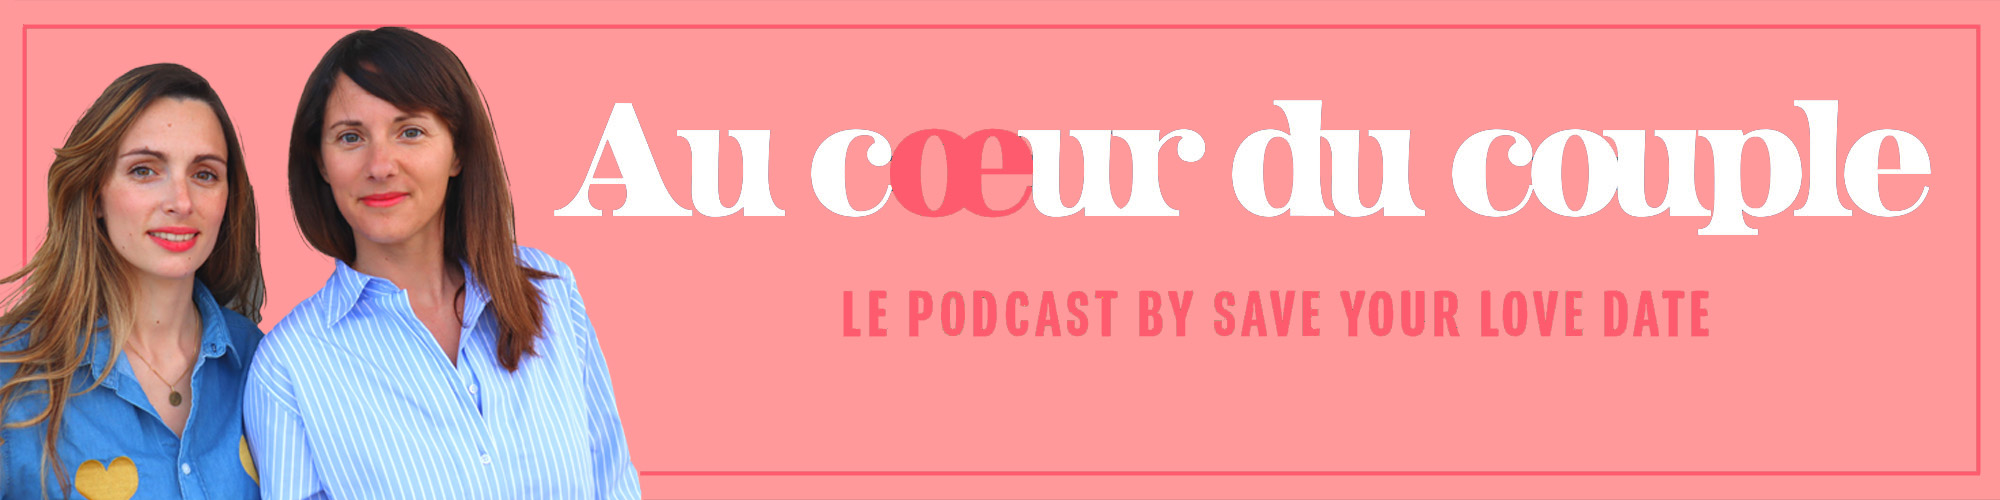 Au Coeur du couple - podcast